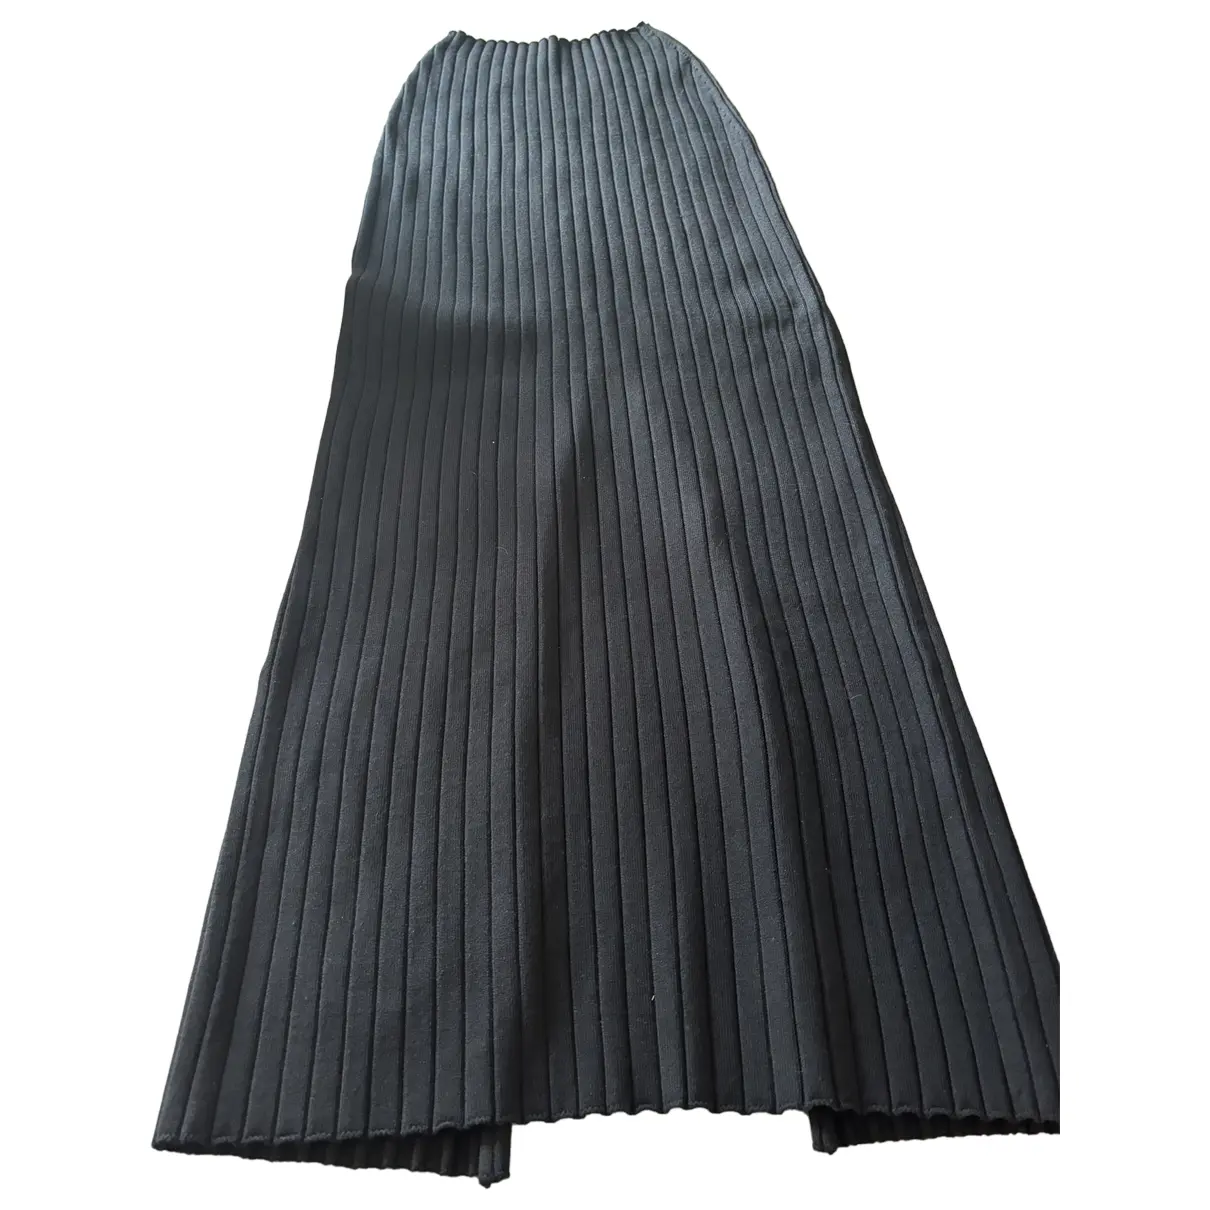 Silk maxi skirt